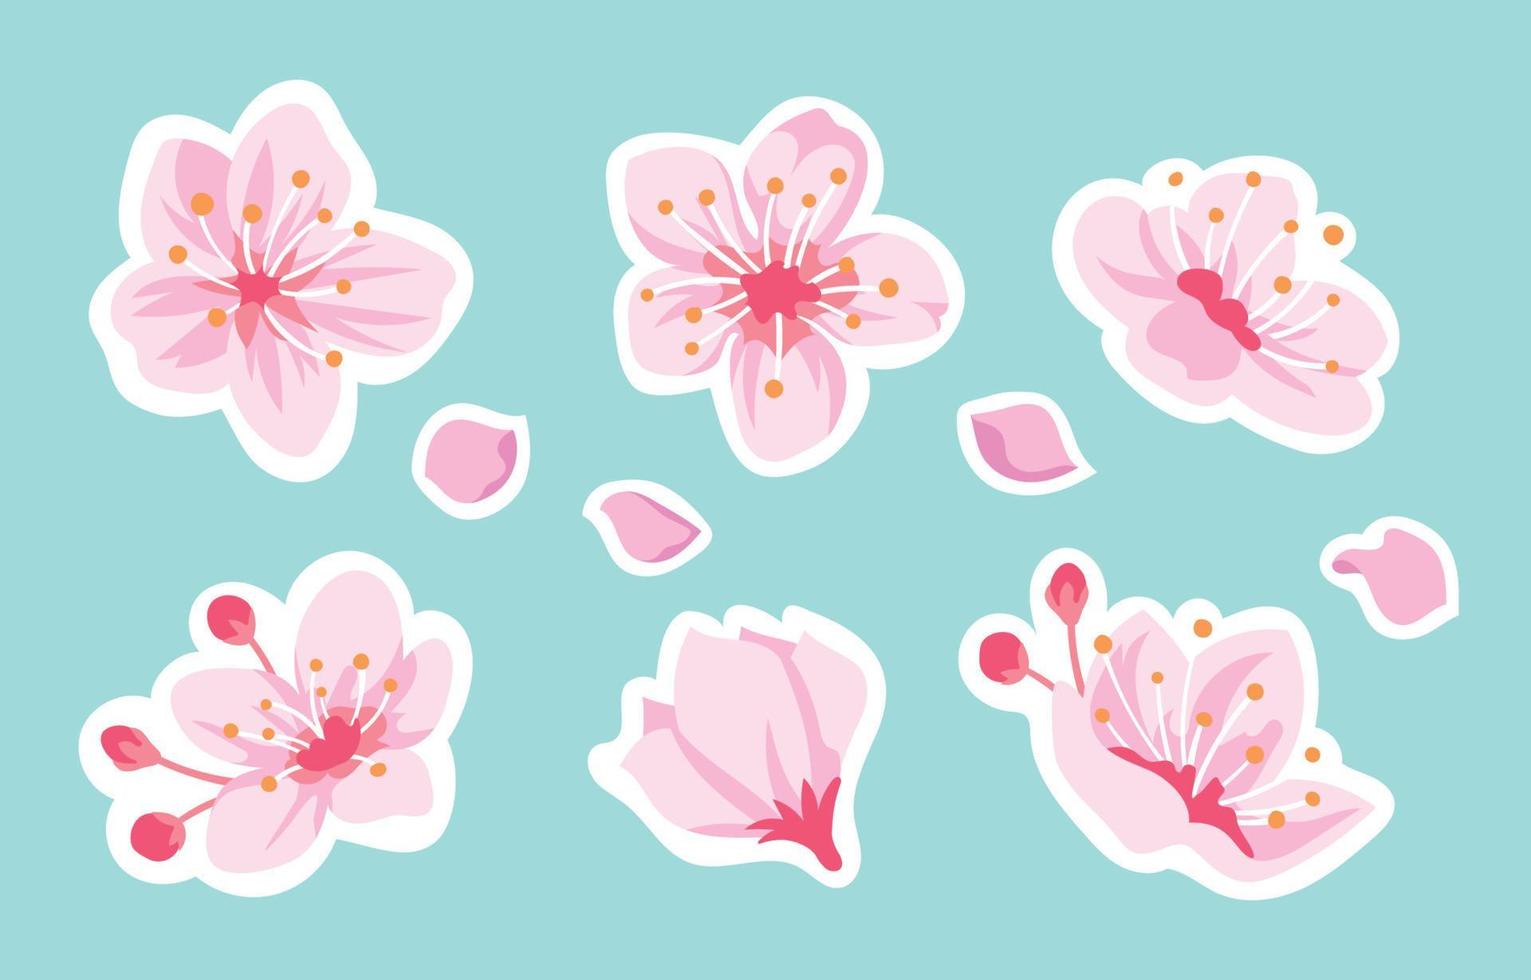 kersenbloesem bloem sticker collectie vector